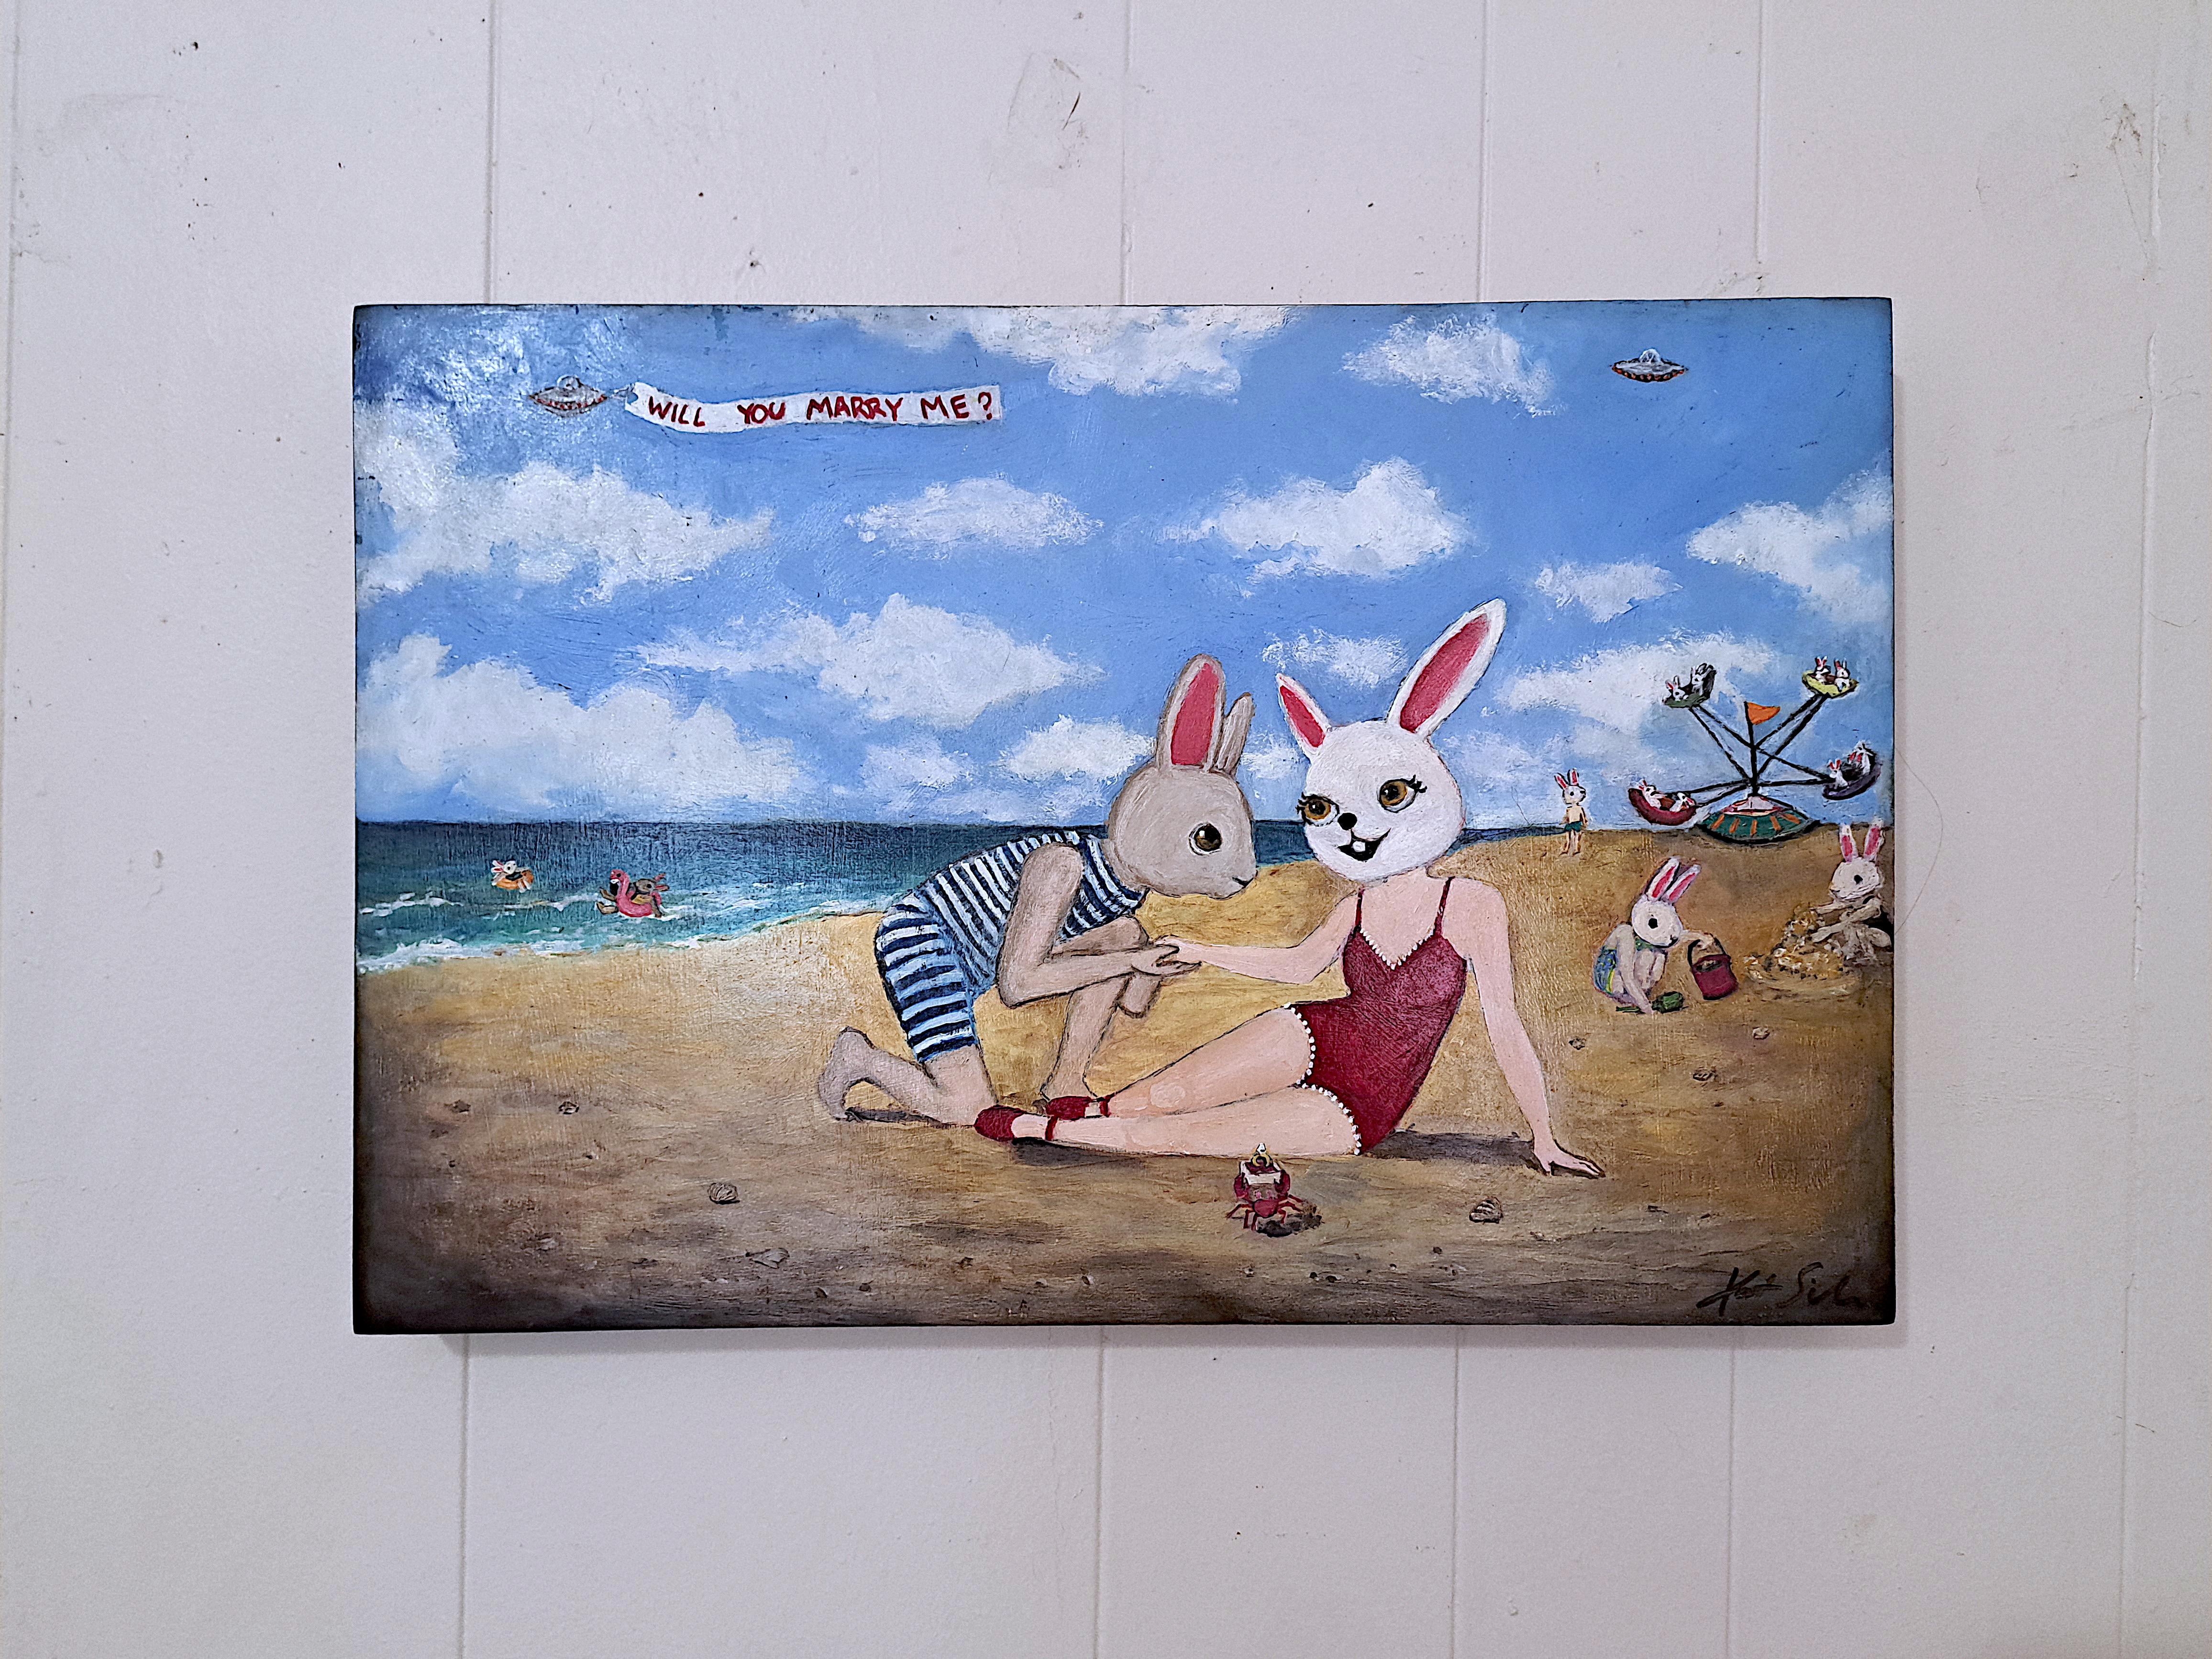 <p>Commentaires de l'artiste<br>La scène représente une plage où des lapins anthropomorphes profitent d'une journée ensoleillée. Au premier plan, un lapin est gracieusement assis sur le rivage sablonneux, tandis qu'un autre est agenouillé à ses